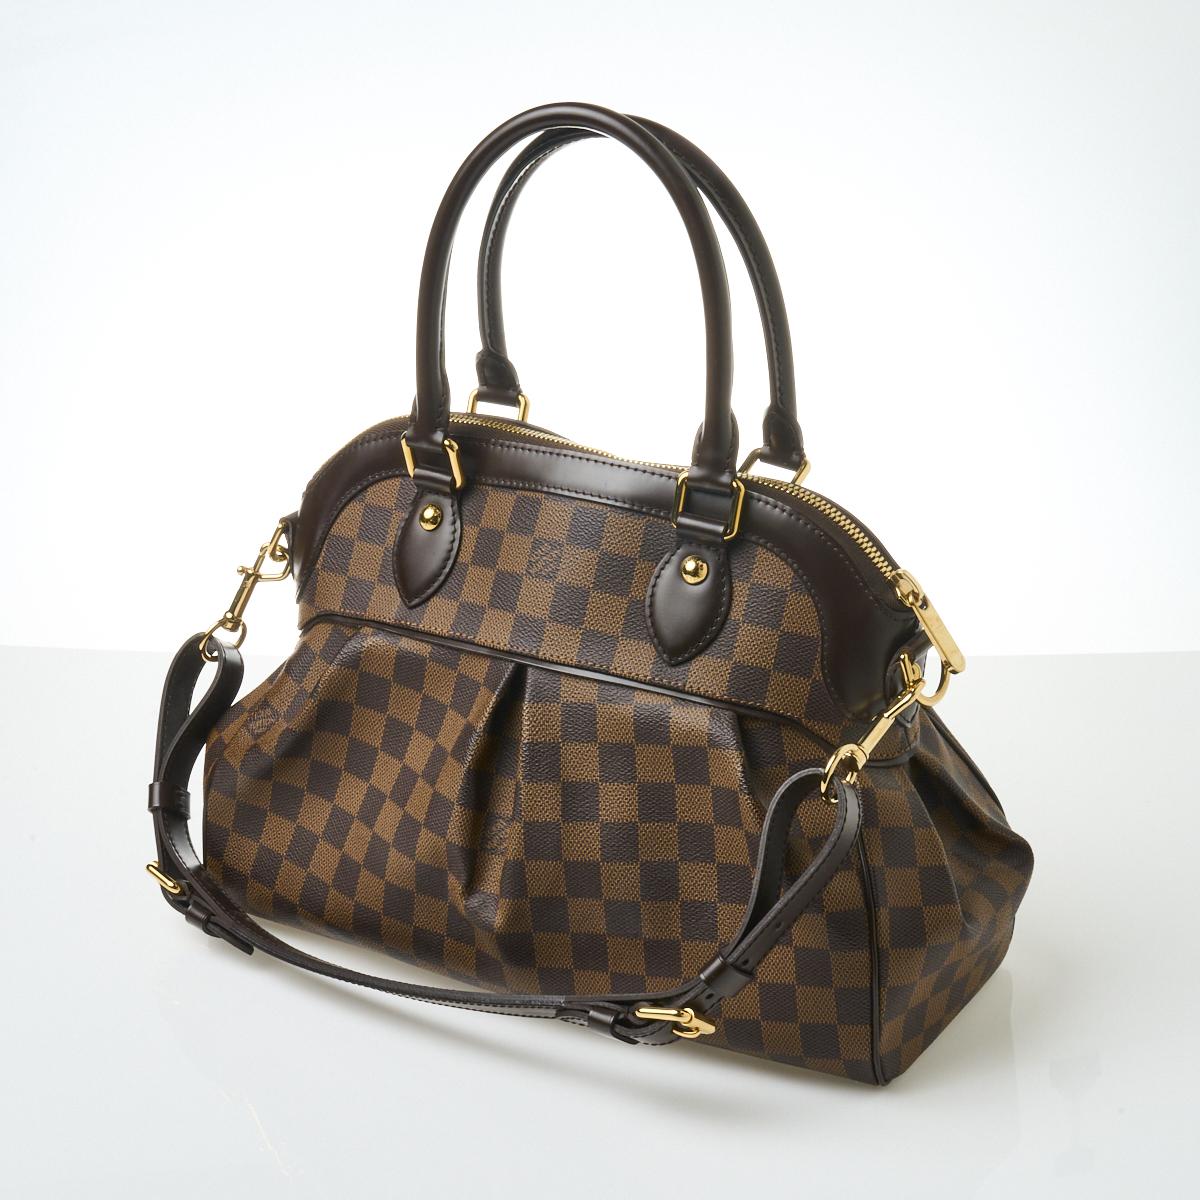 Sold at Auction: Louis Vuitton, Louis Vuitton Trevi PM Luxury